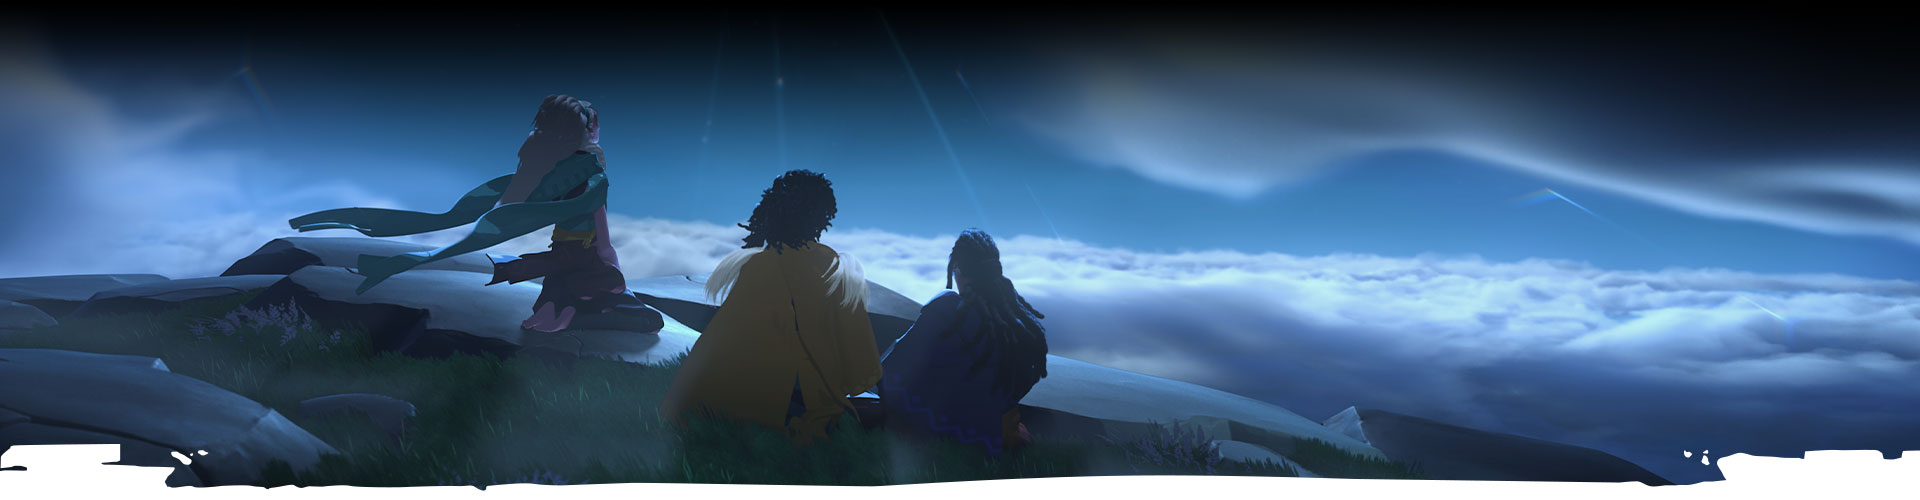 Drie personages kijken omhoog naar de nachtelijke hemel. 